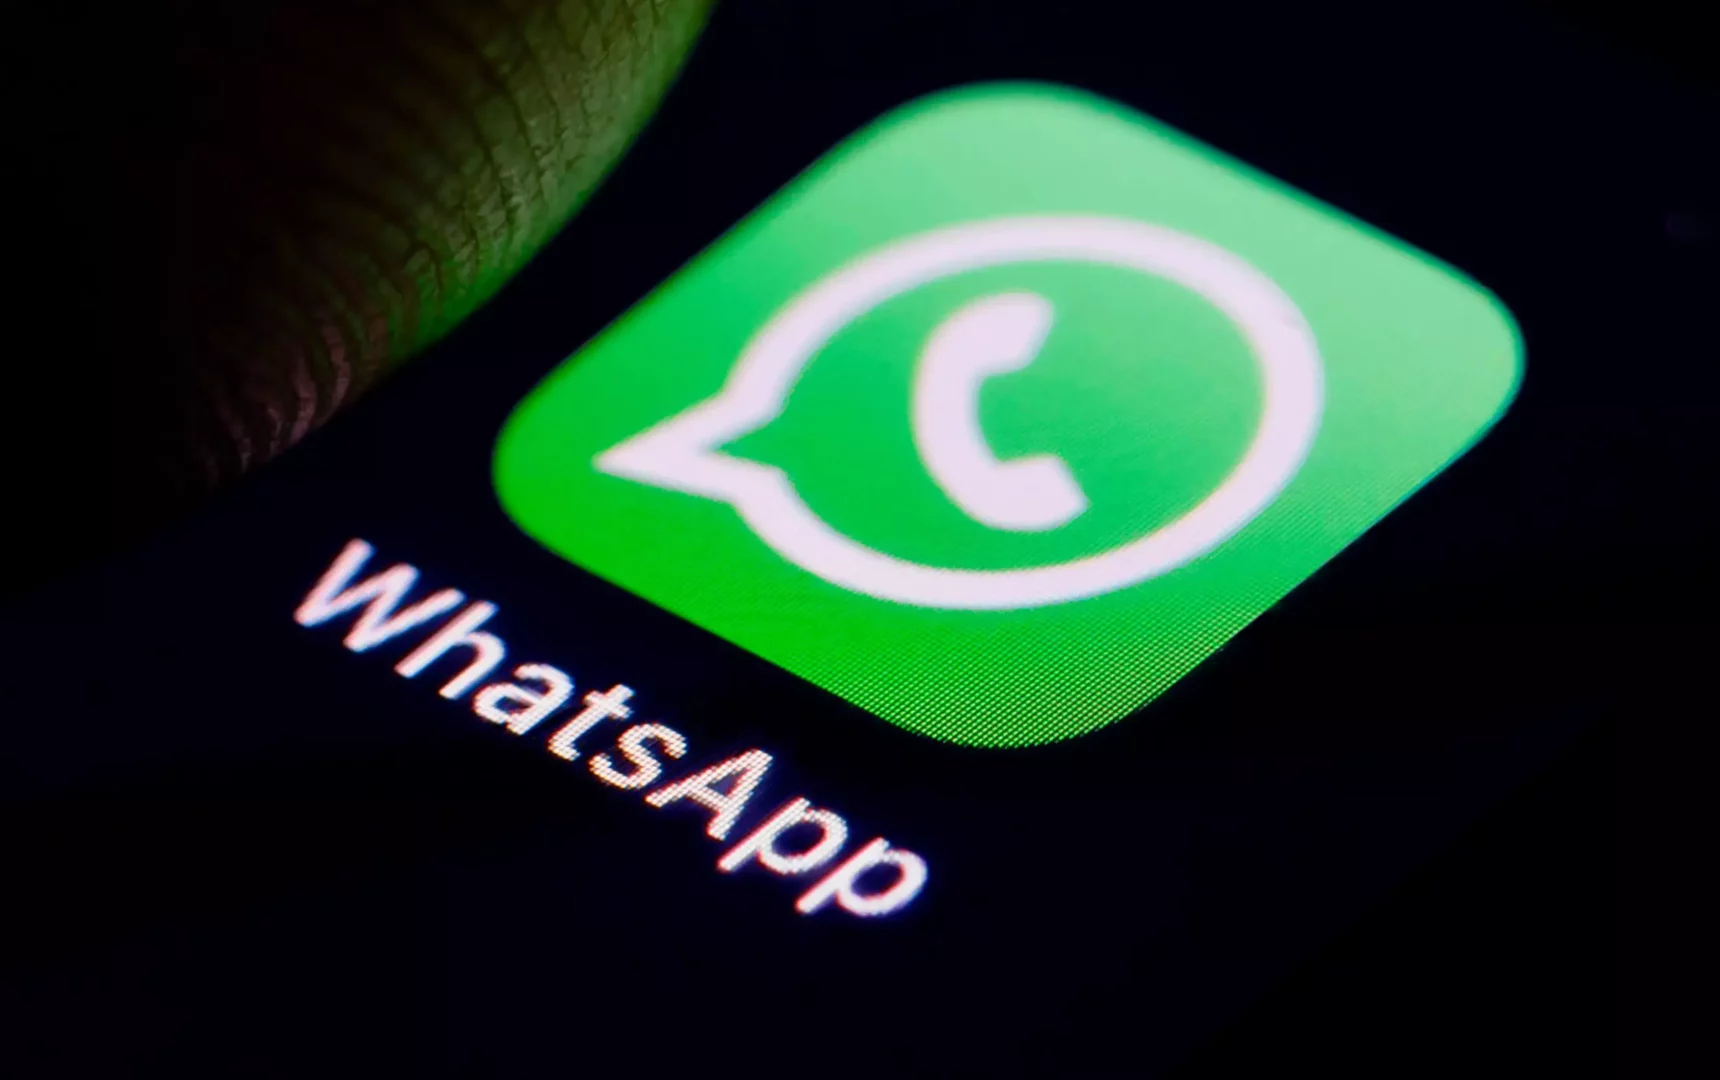 В WhatsApp тестируется новая функция для объединения с другими мессенджерами